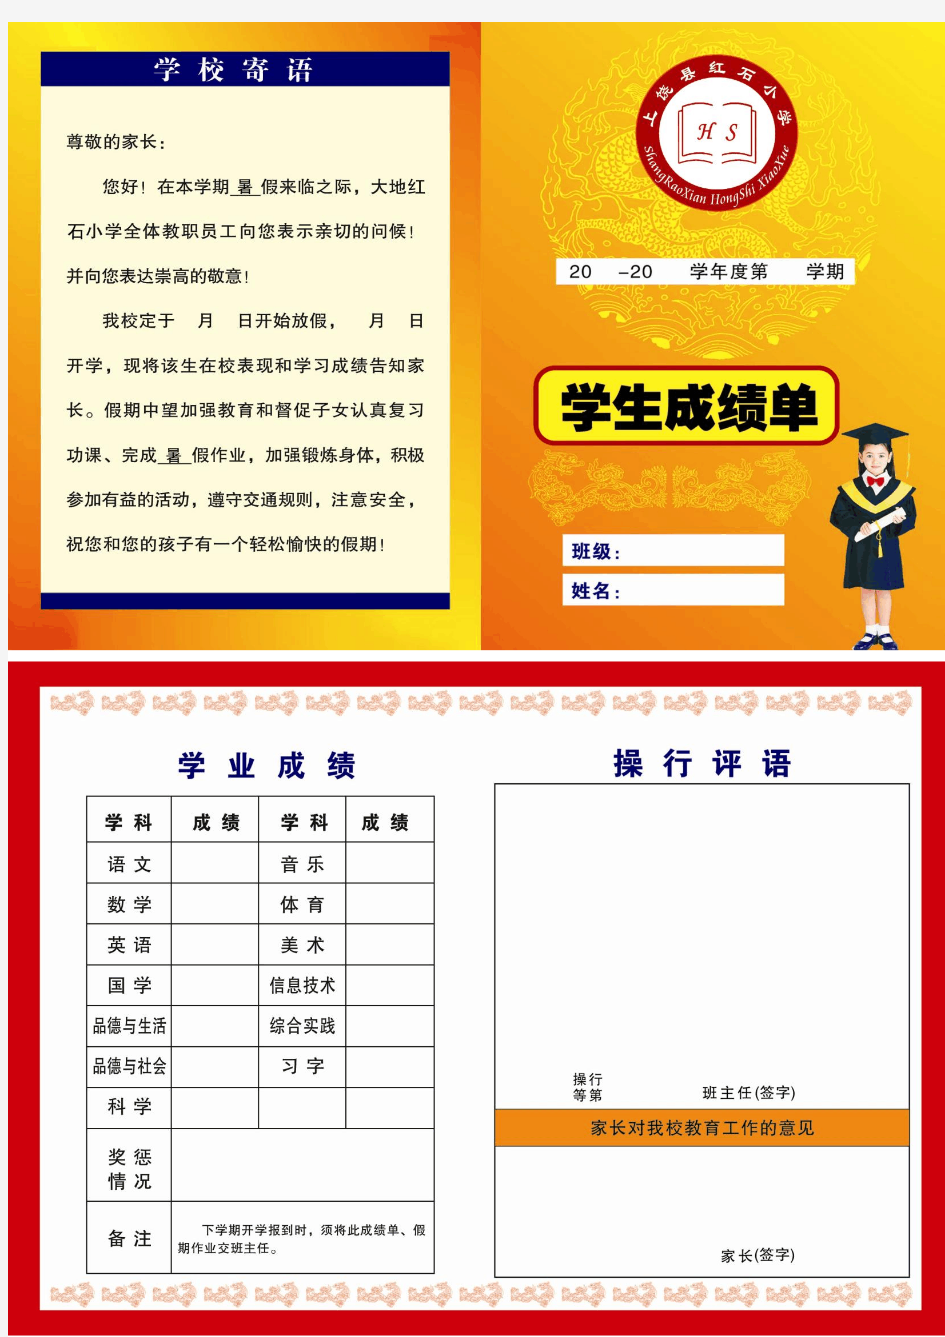 上饶县大地红石小学成绩单 成绩单模板 小学成绩单 成绩报告单 素质发展报告单 素质报告单